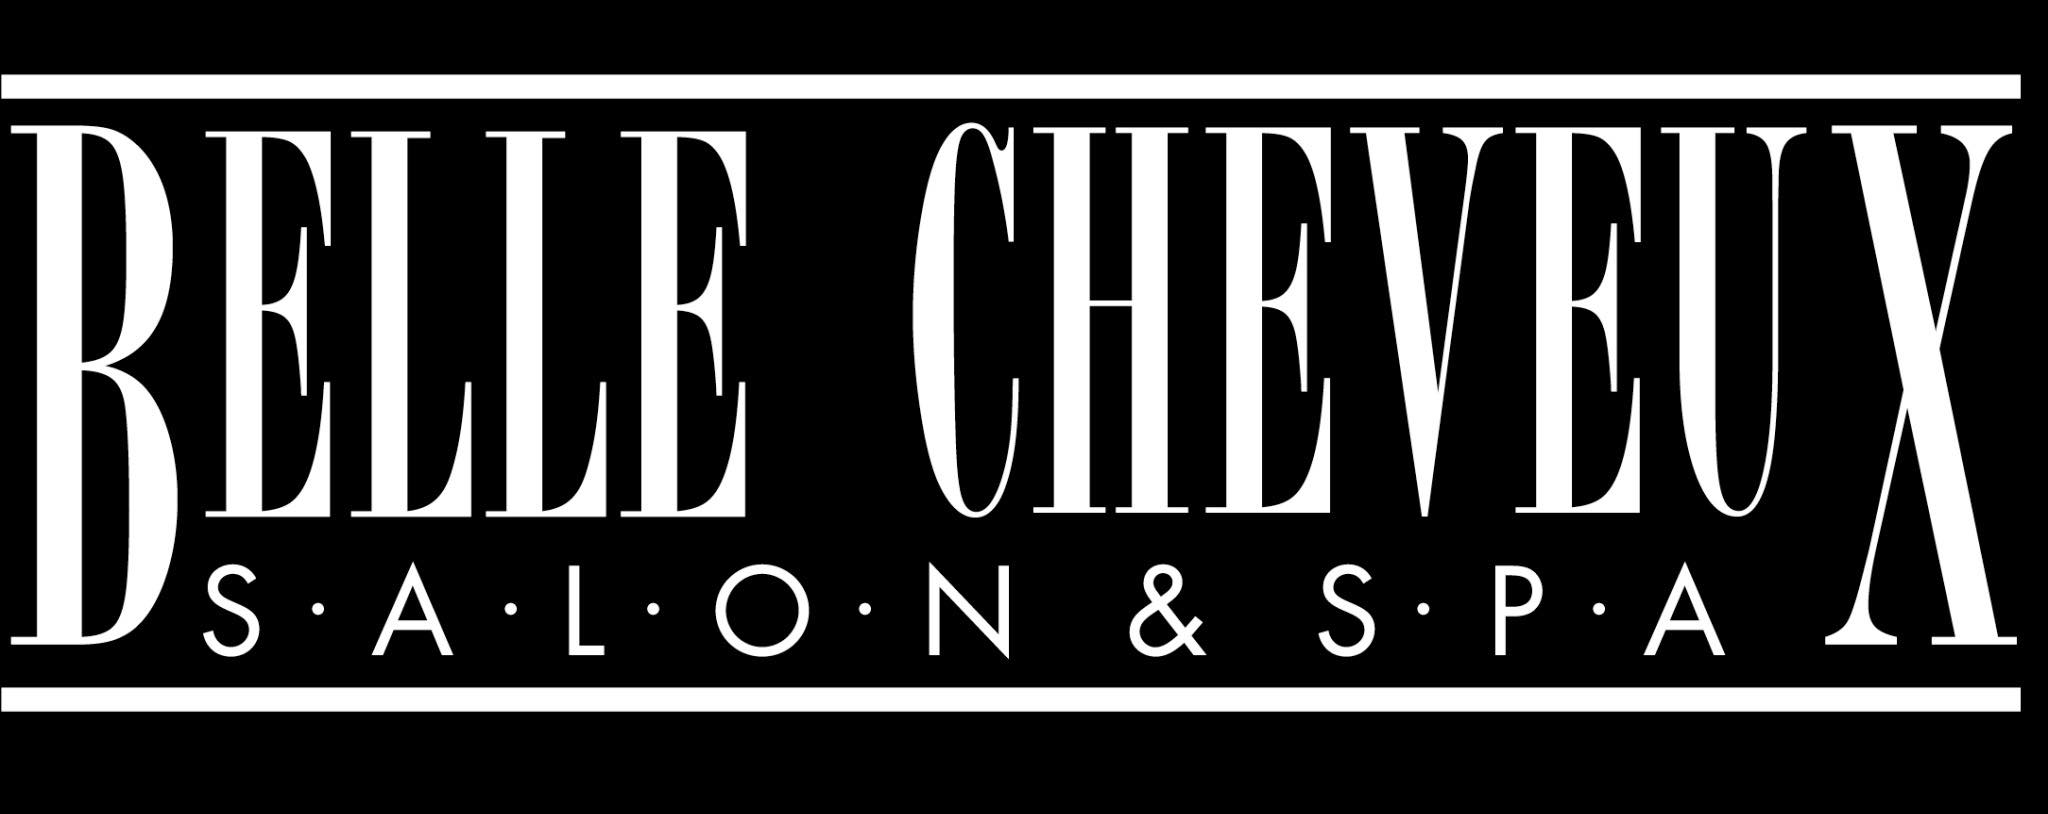 Belle Cheveux Salon & Spa